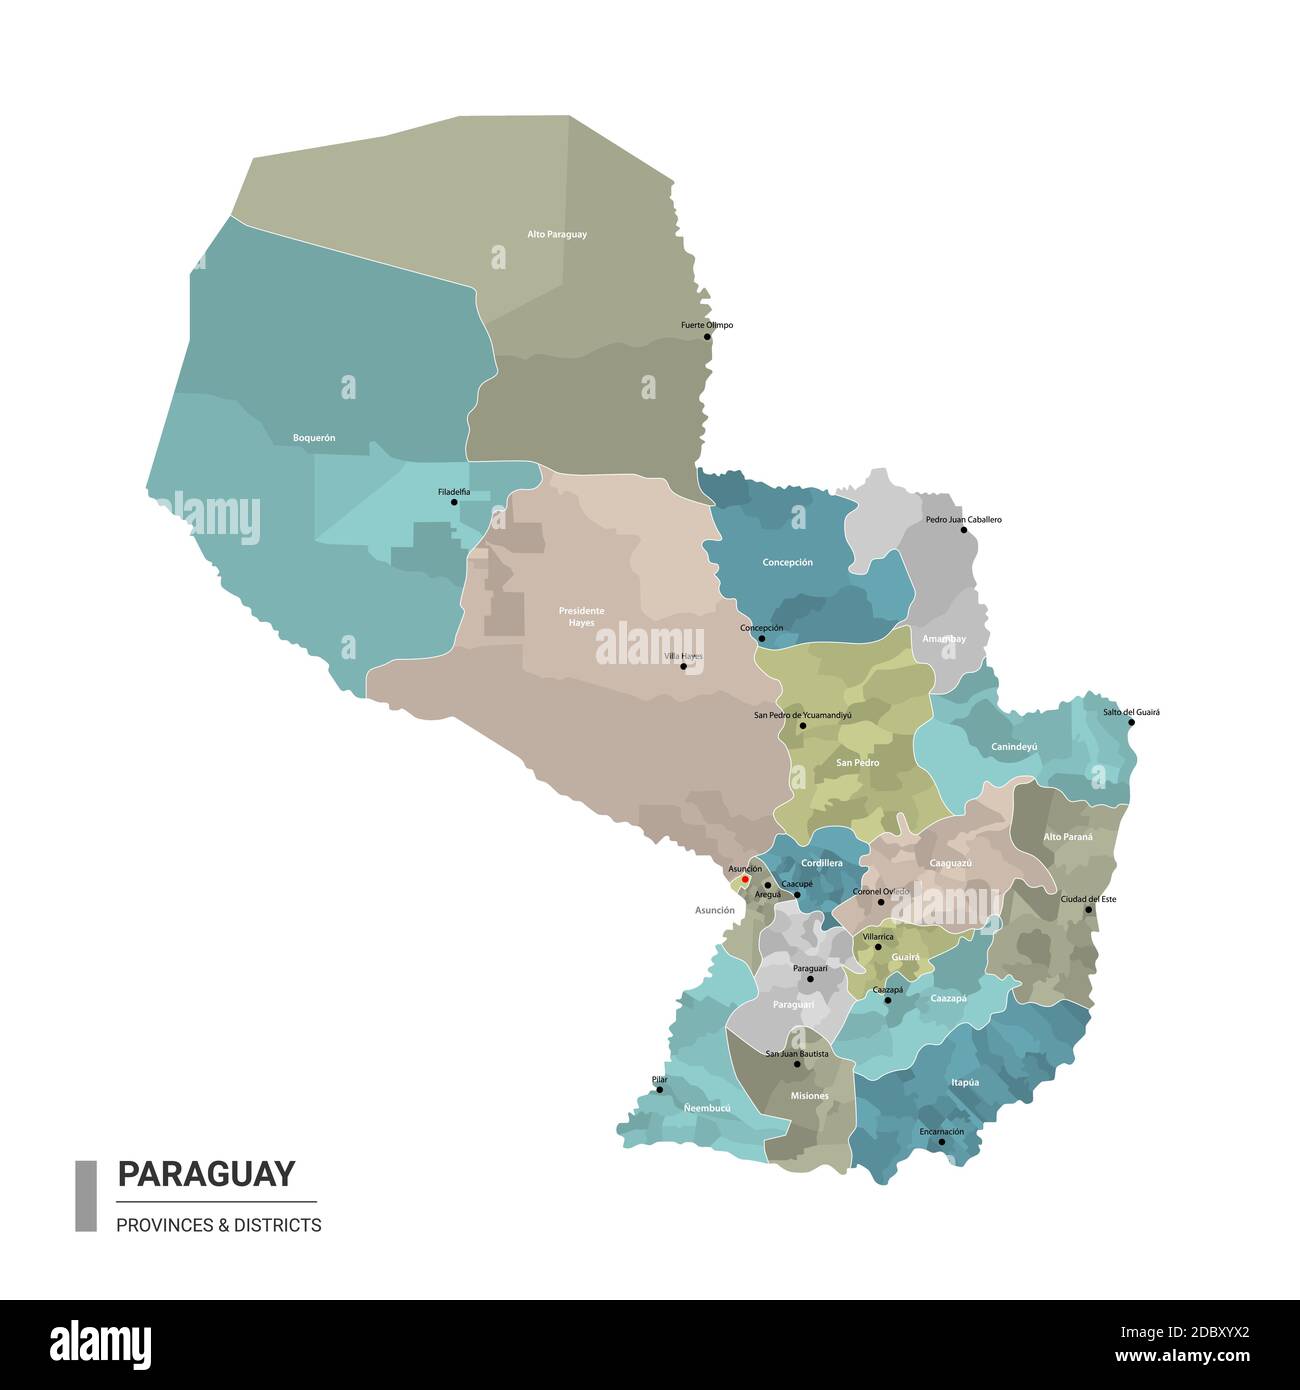 Paraguay higt carte détaillée avec subdivisions. Carte administrative du Paraguay avec le nom des districts et des villes, colorée par les Etats et le dist administratif Illustration de Vecteur